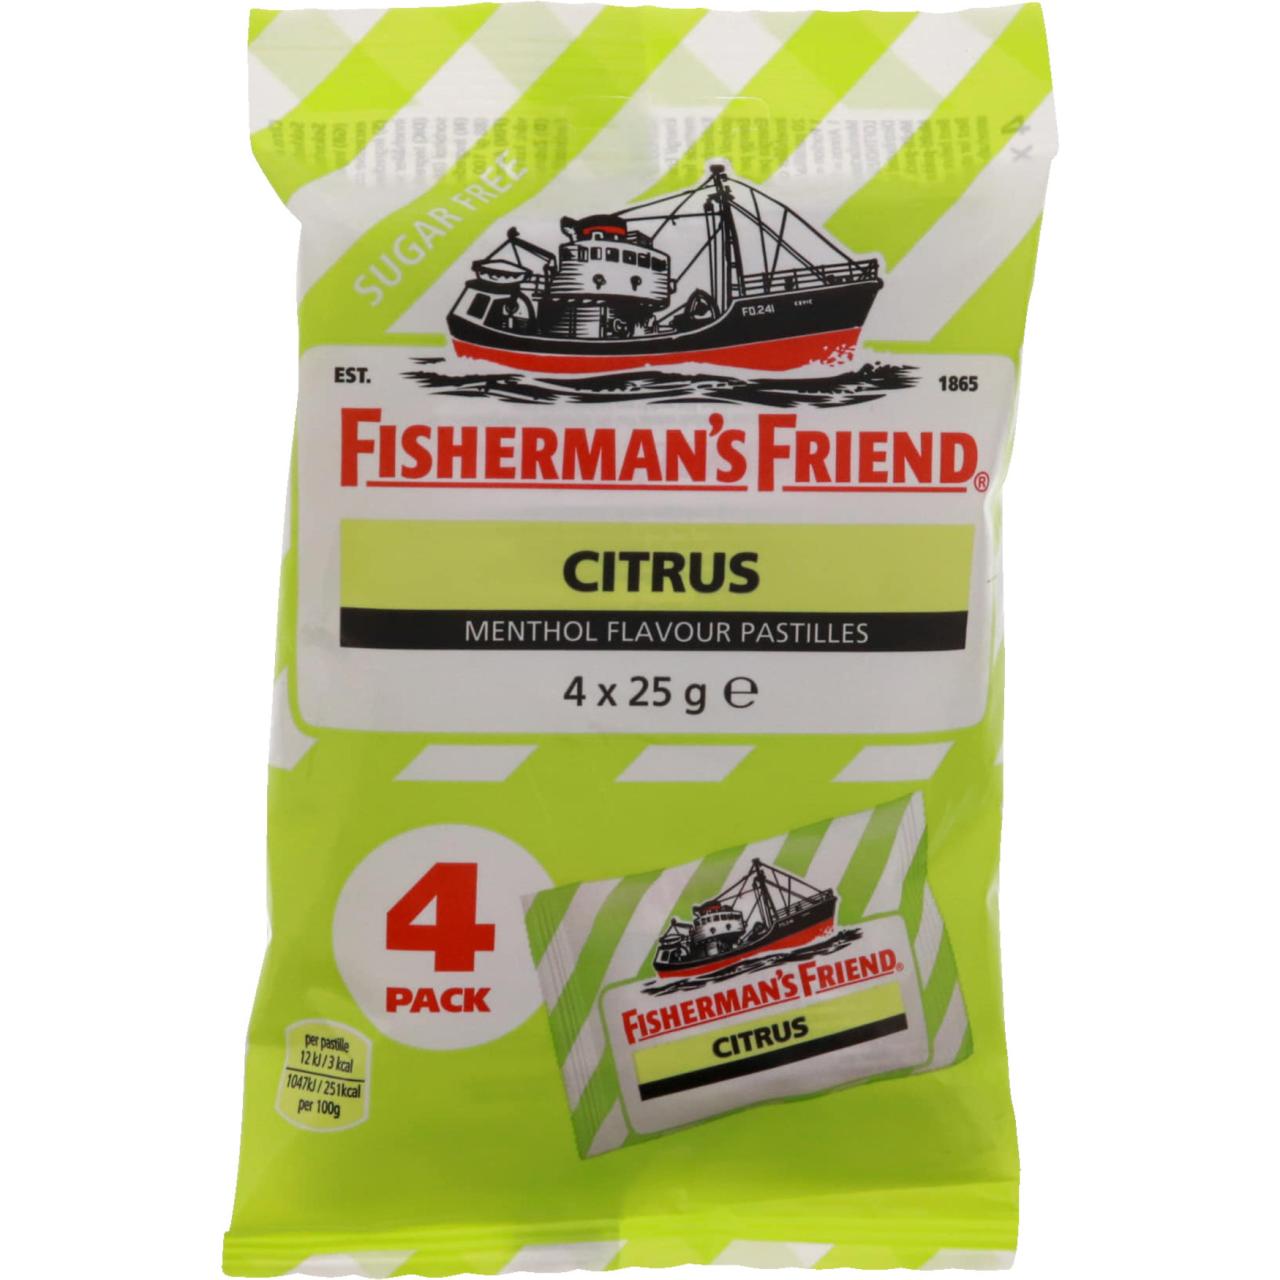 Fisherman's Friend Citrus sukkerfri 4 x 25g